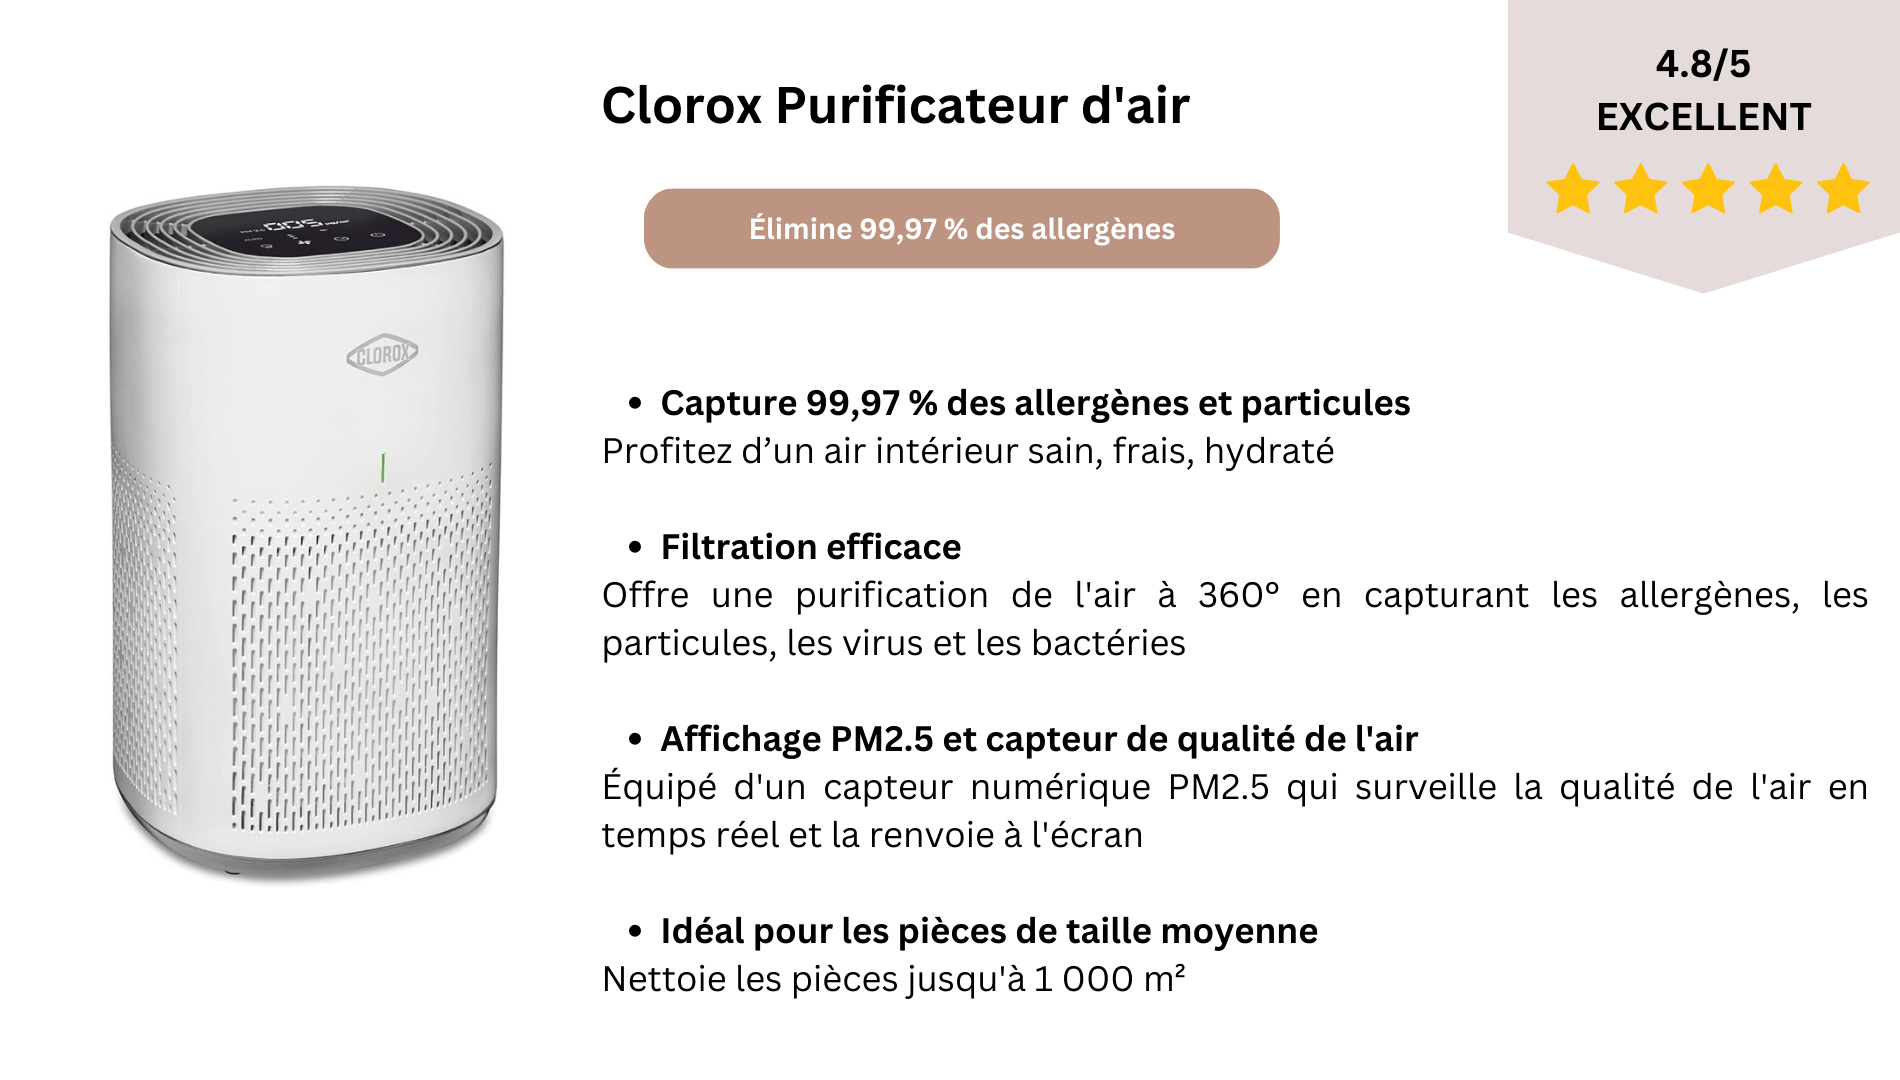 Clorox Purificateur d'air